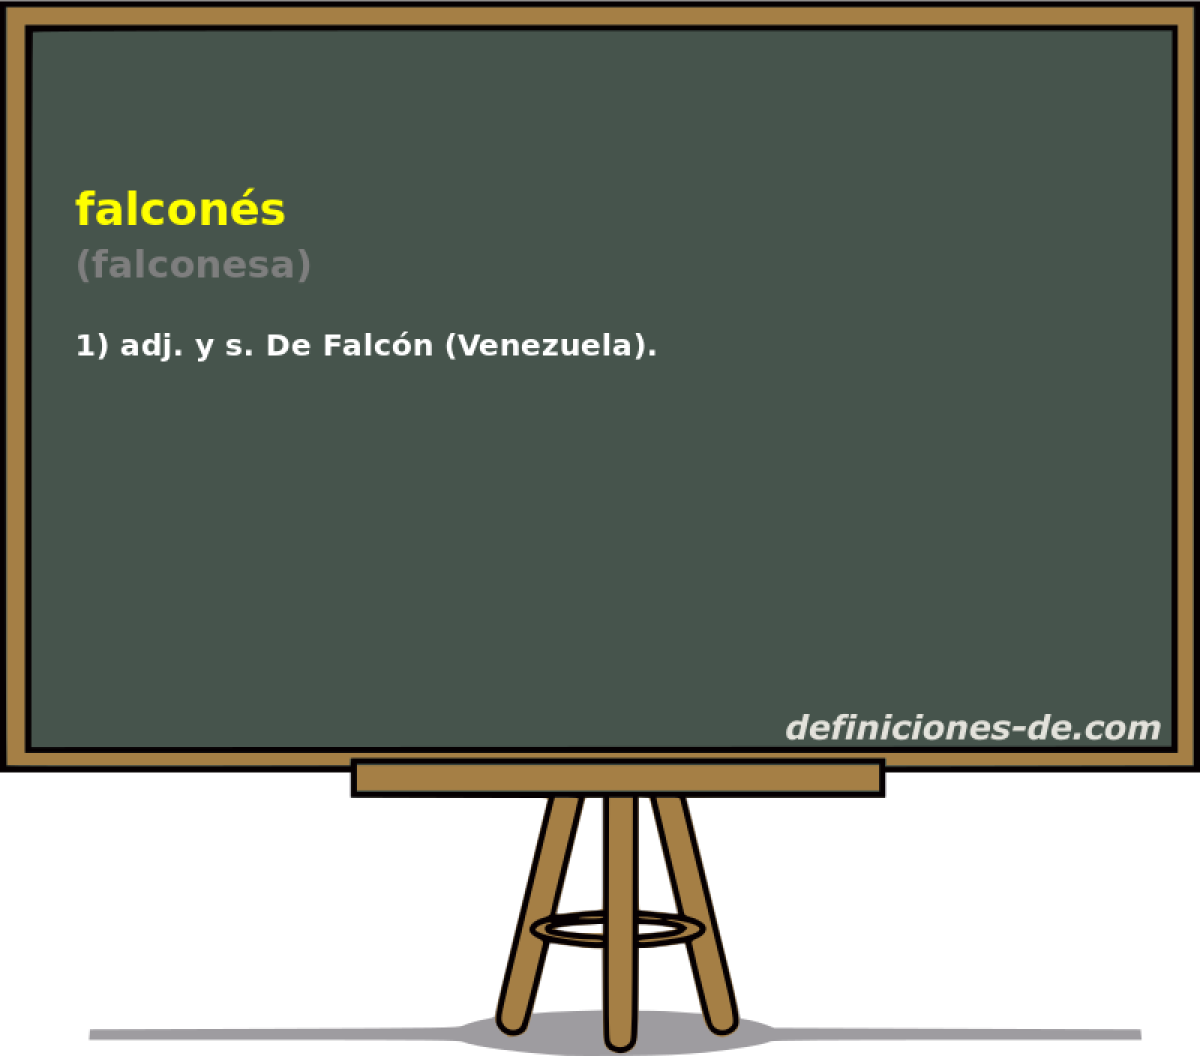 falcons (falconesa)